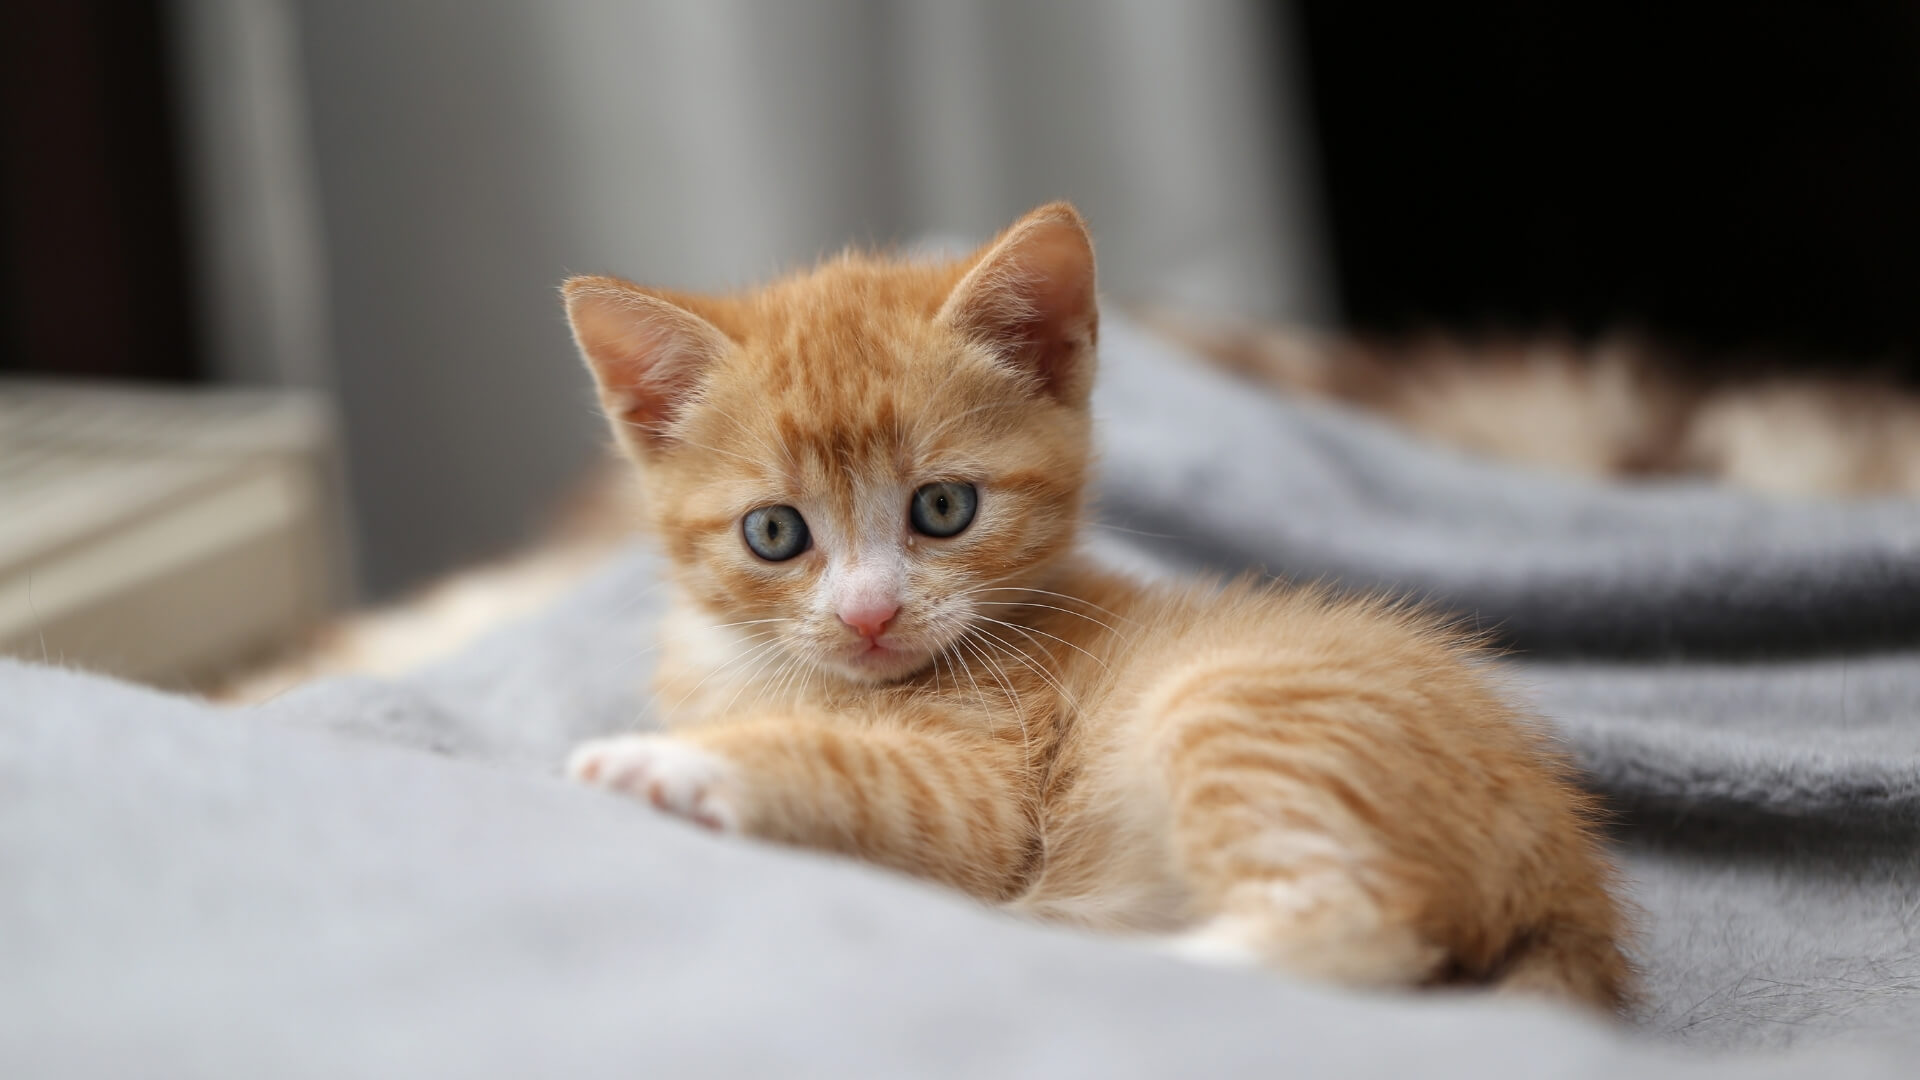 An Orange Kitten Lying on Gray Towel